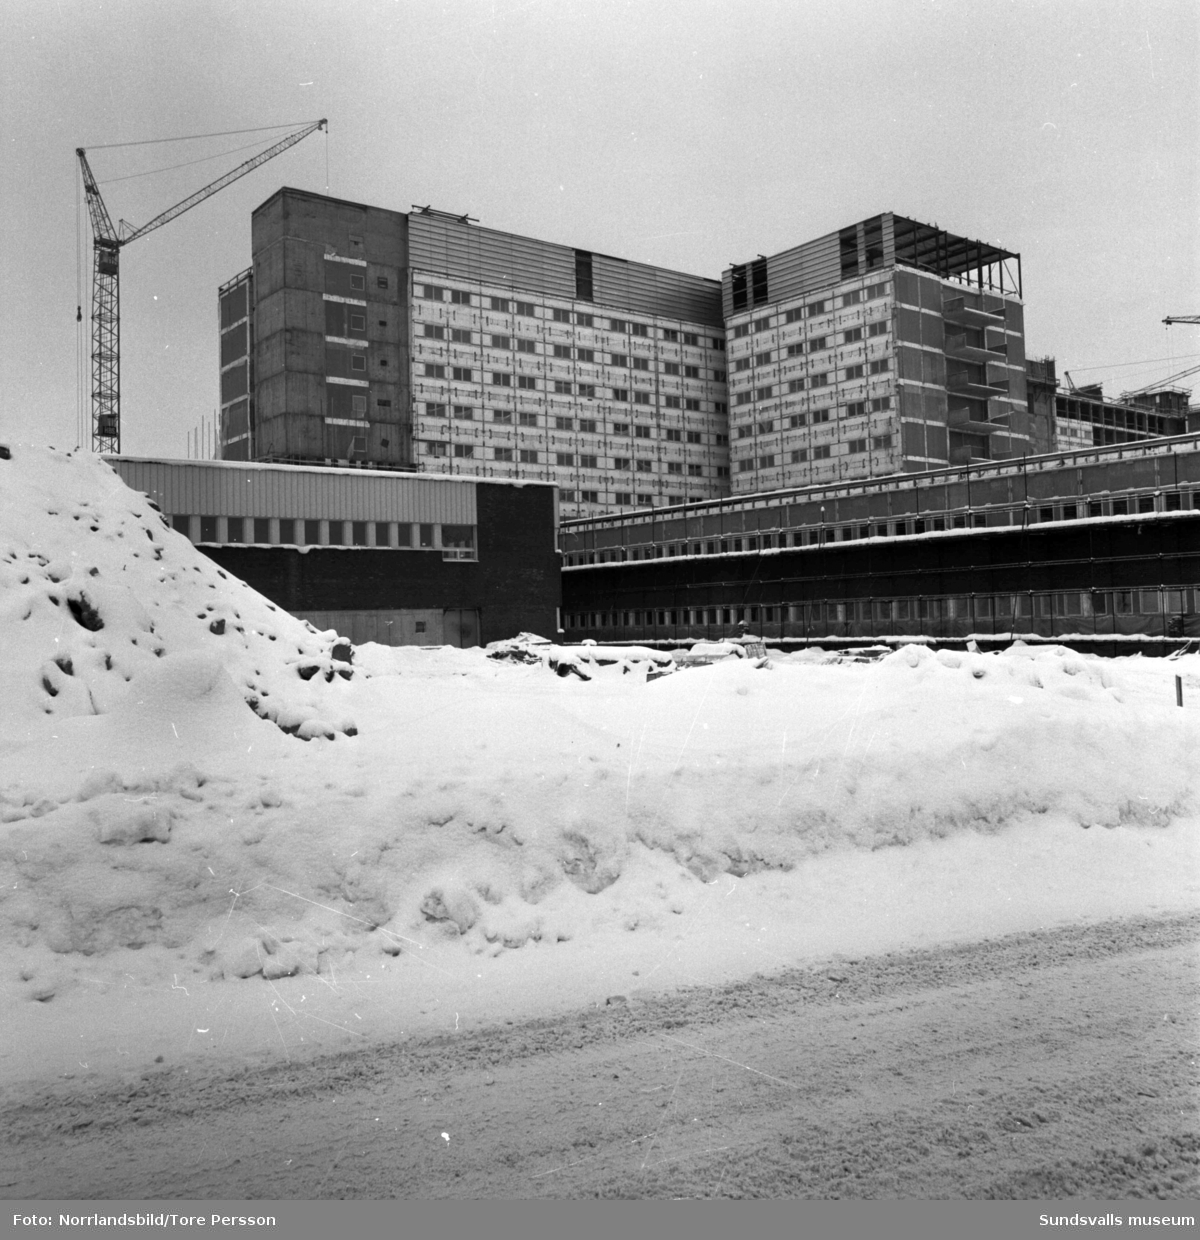 Sundsvalls nya sjukhus under uppförande.